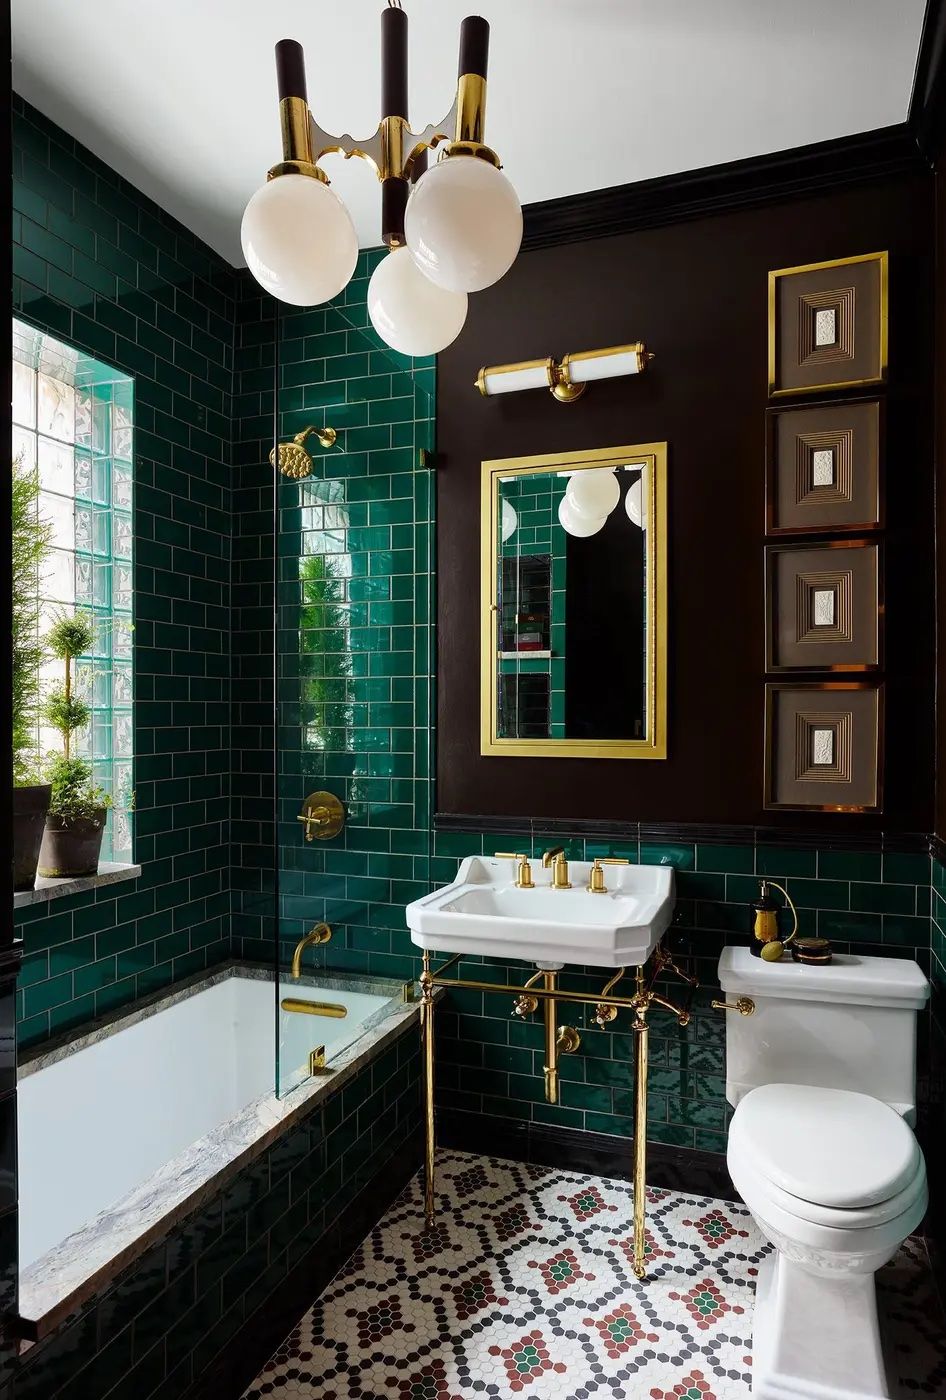 20 Beautiful Bathroom Lighting Ideas - Bathroom Vanity Lights